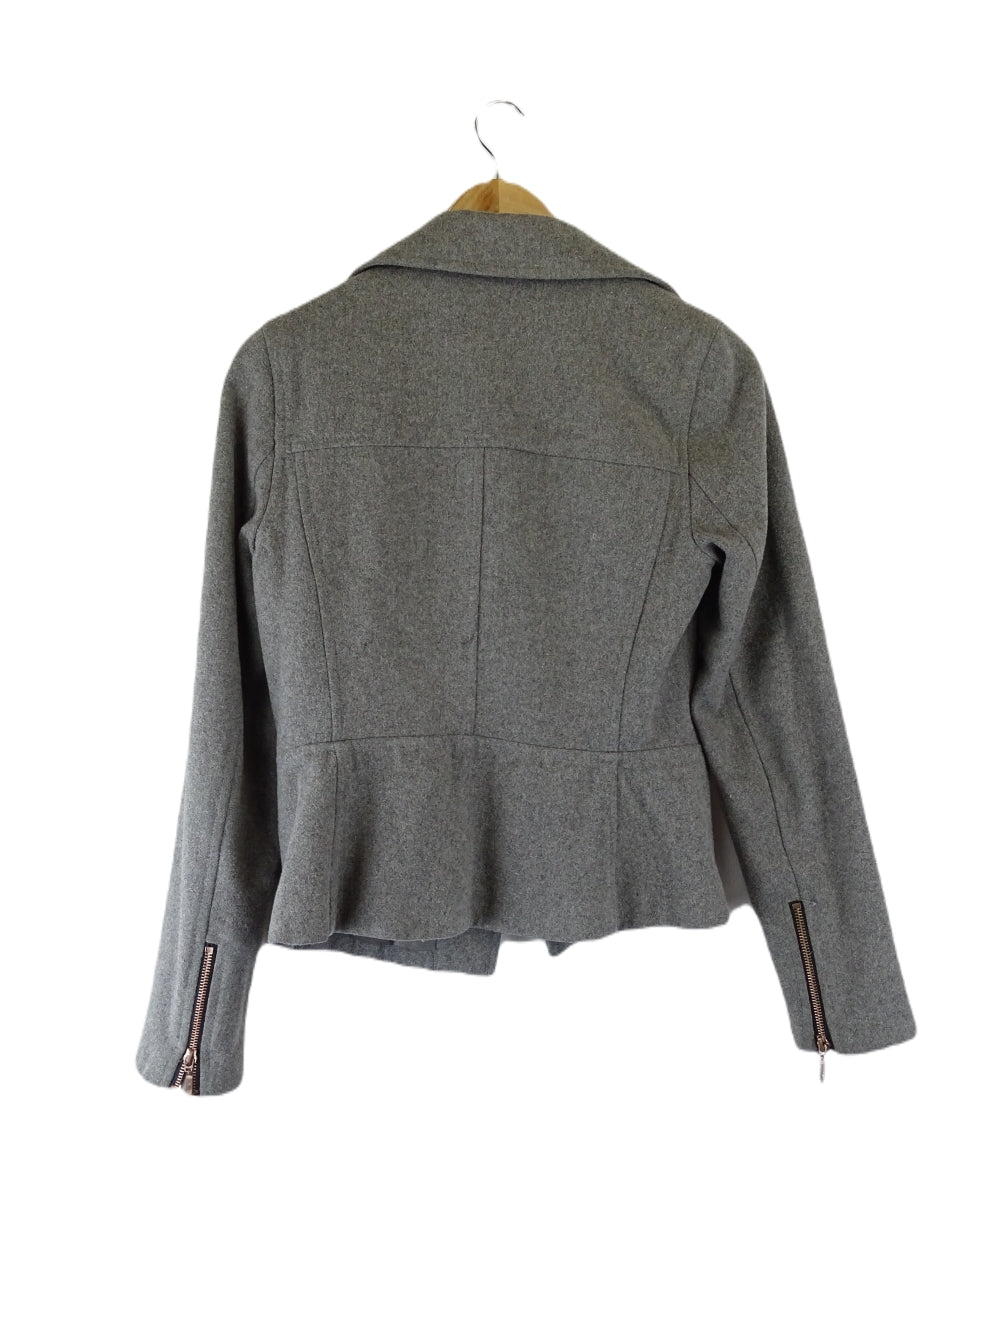 Portmans Grey Jacket 8